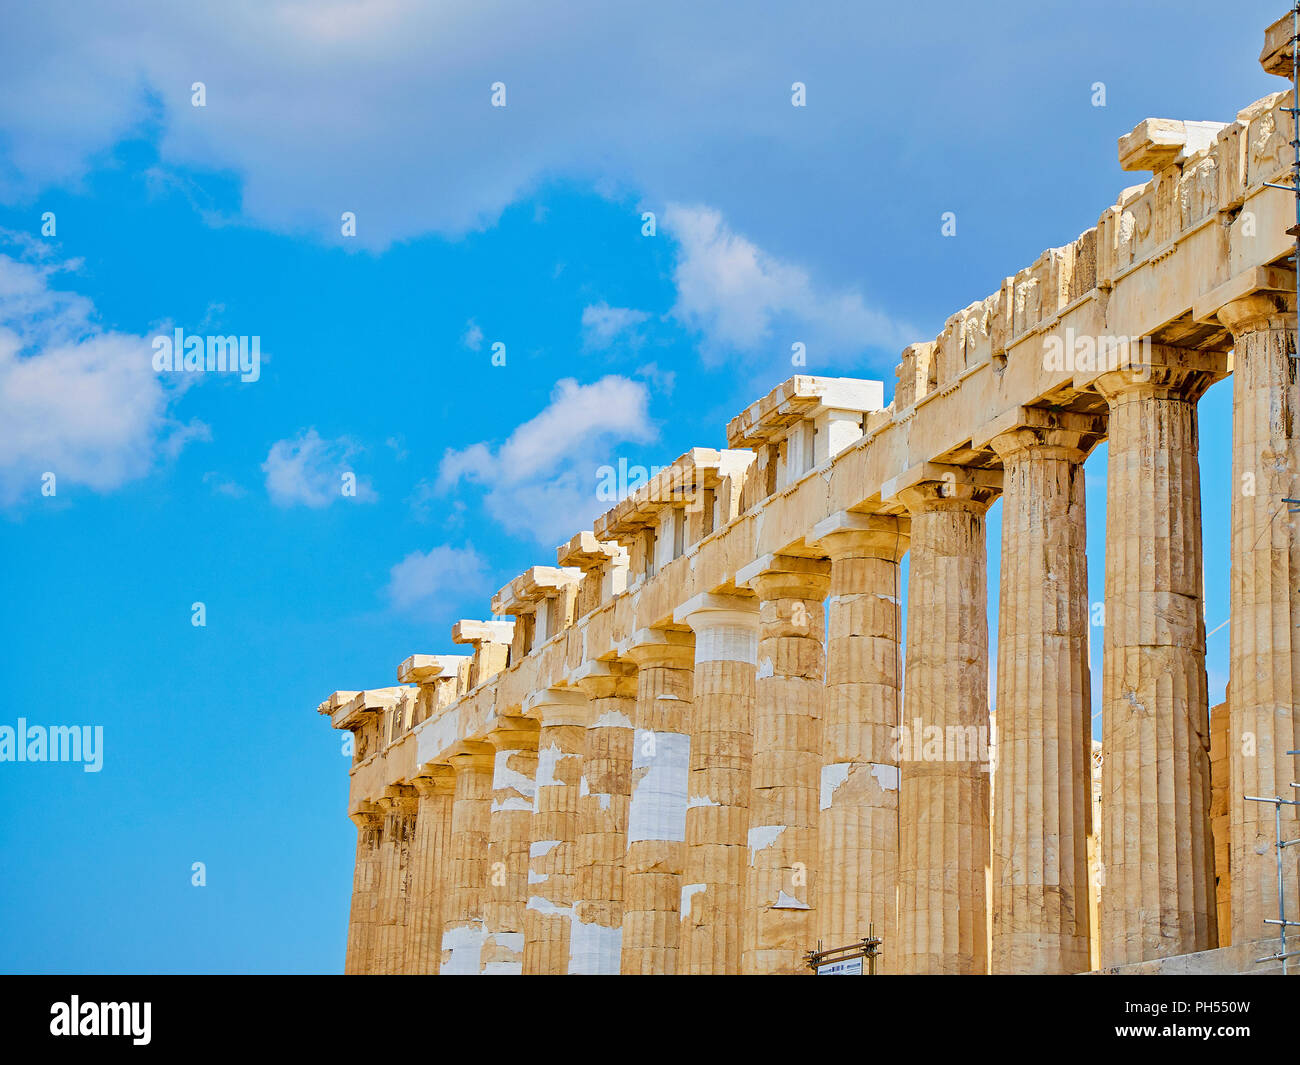 Cornicione dettaglio del lato meridionale del Partenone, l'antico tempio in onore della dea Athena sull'Acropoli ateniese. Atene. Attica, Foto Stock